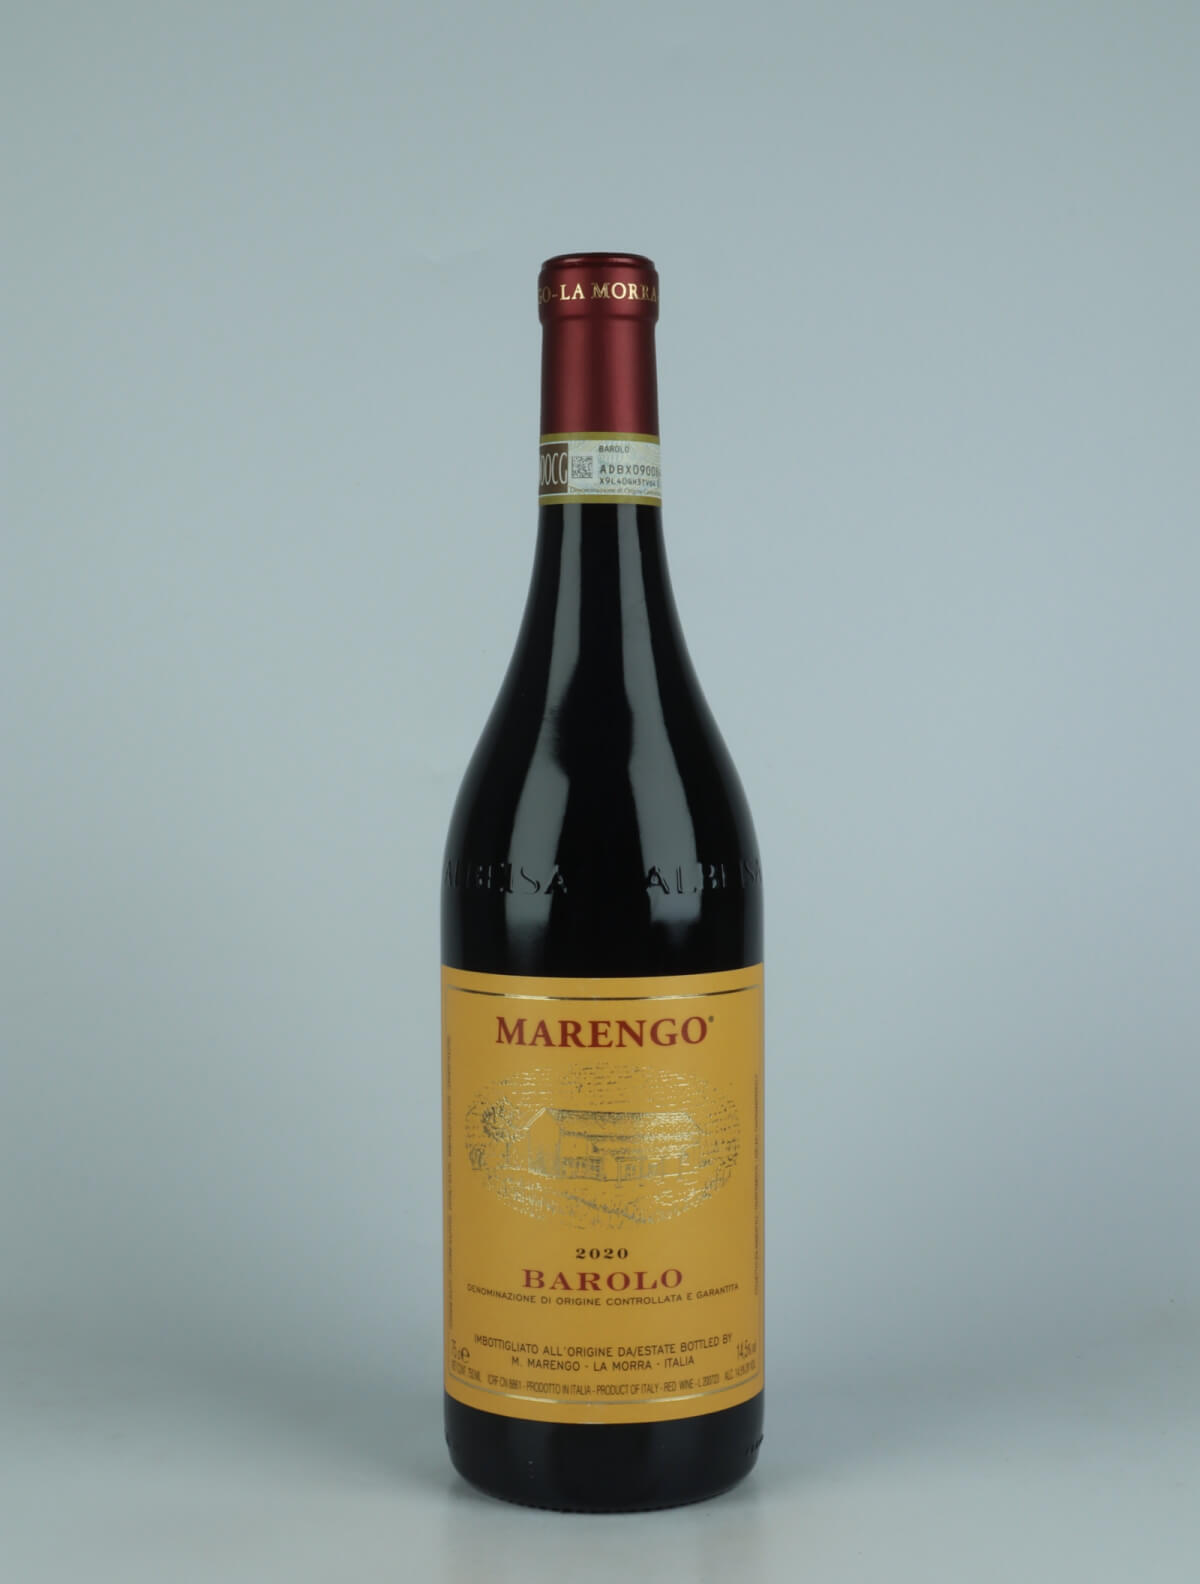 En flaske 2020 Barolo Rødvin fra Mario Marengo, Piemonte i Italien